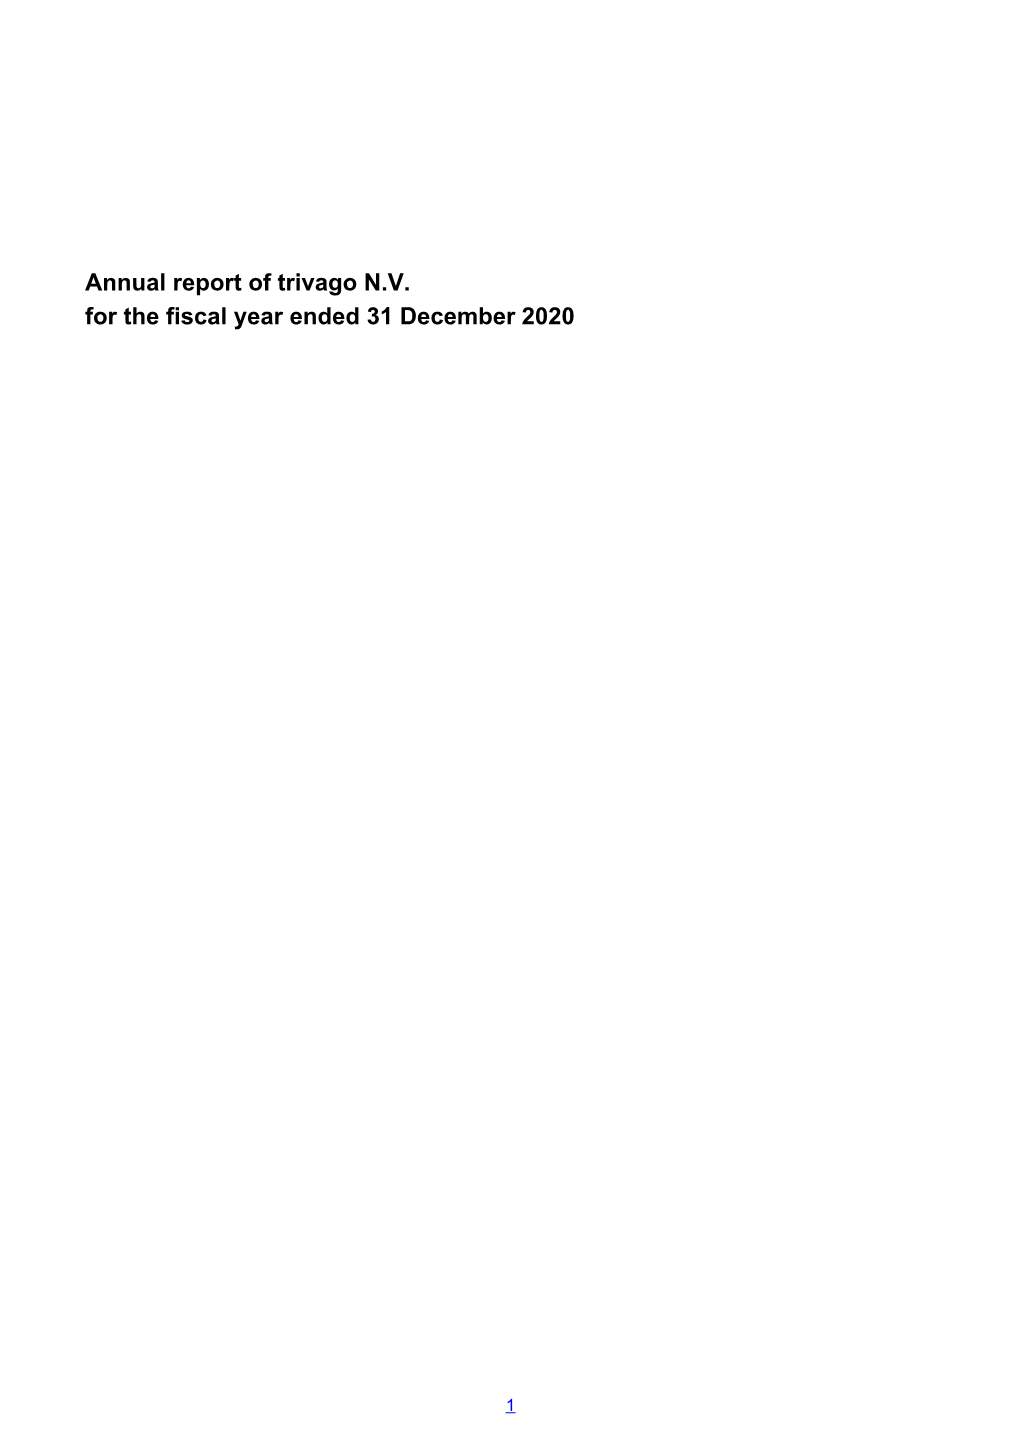 2020 Dutch Statutory Annual Report